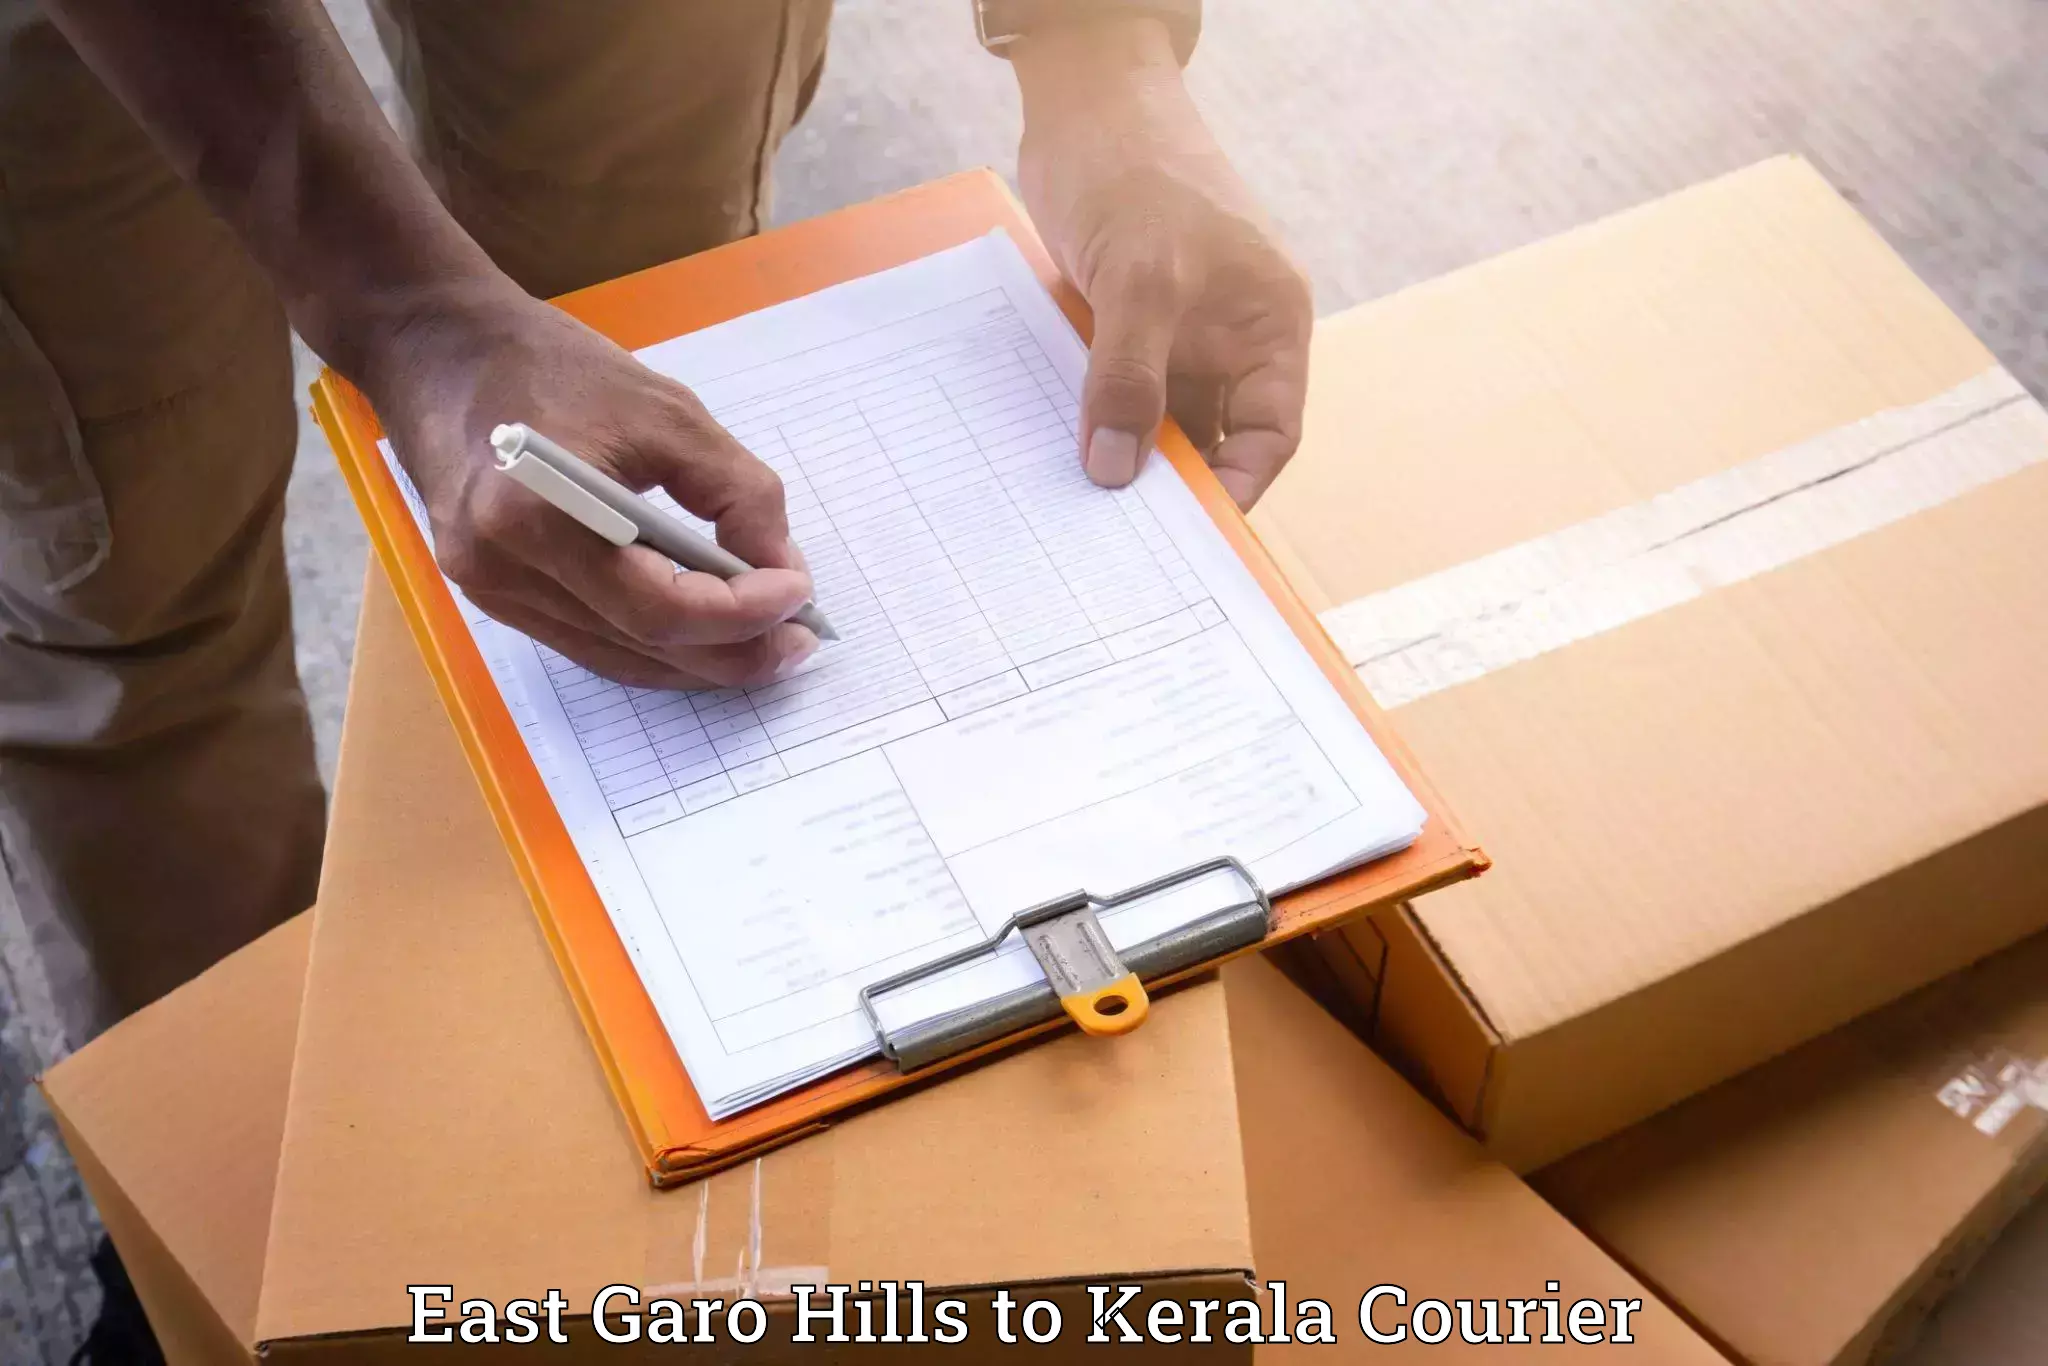 Furniture moving service East Garo Hills to Kerala